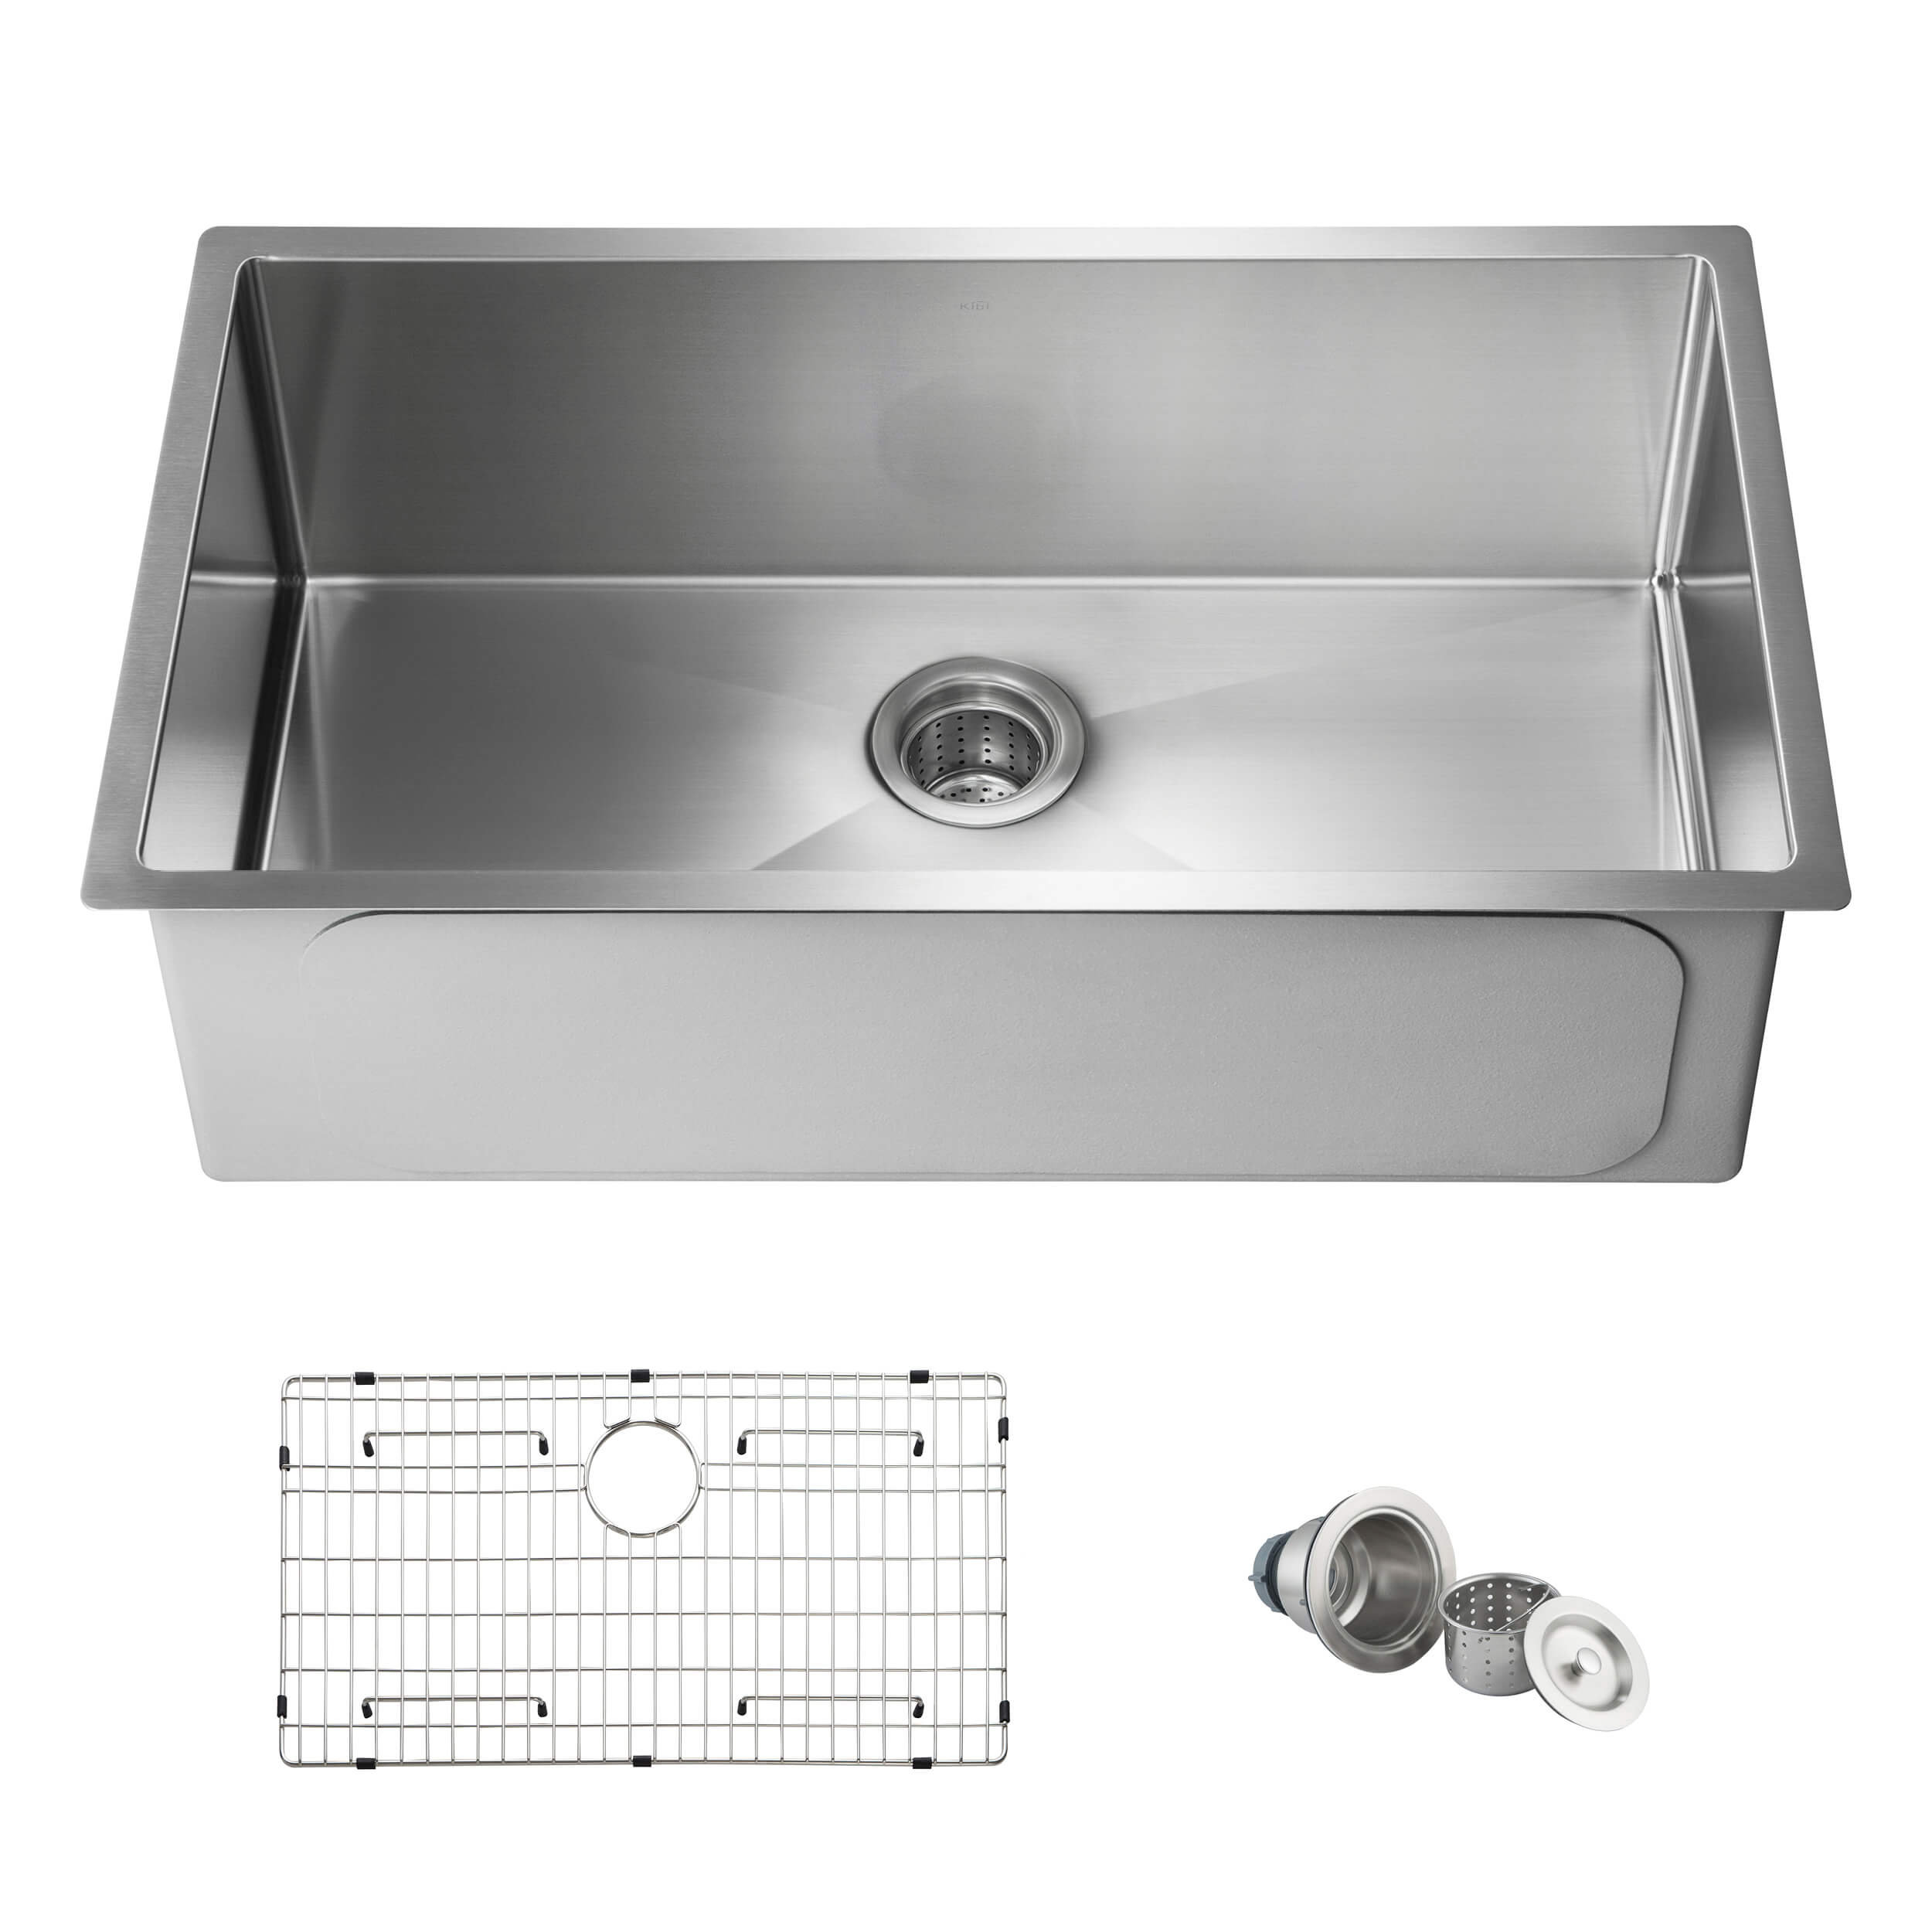 https://assets.wfcdn.com/im/64143632/compr-r85/2244/224432461/33-l-undermount-single-bowl-stainless-steel-kitchen-sink.jpg